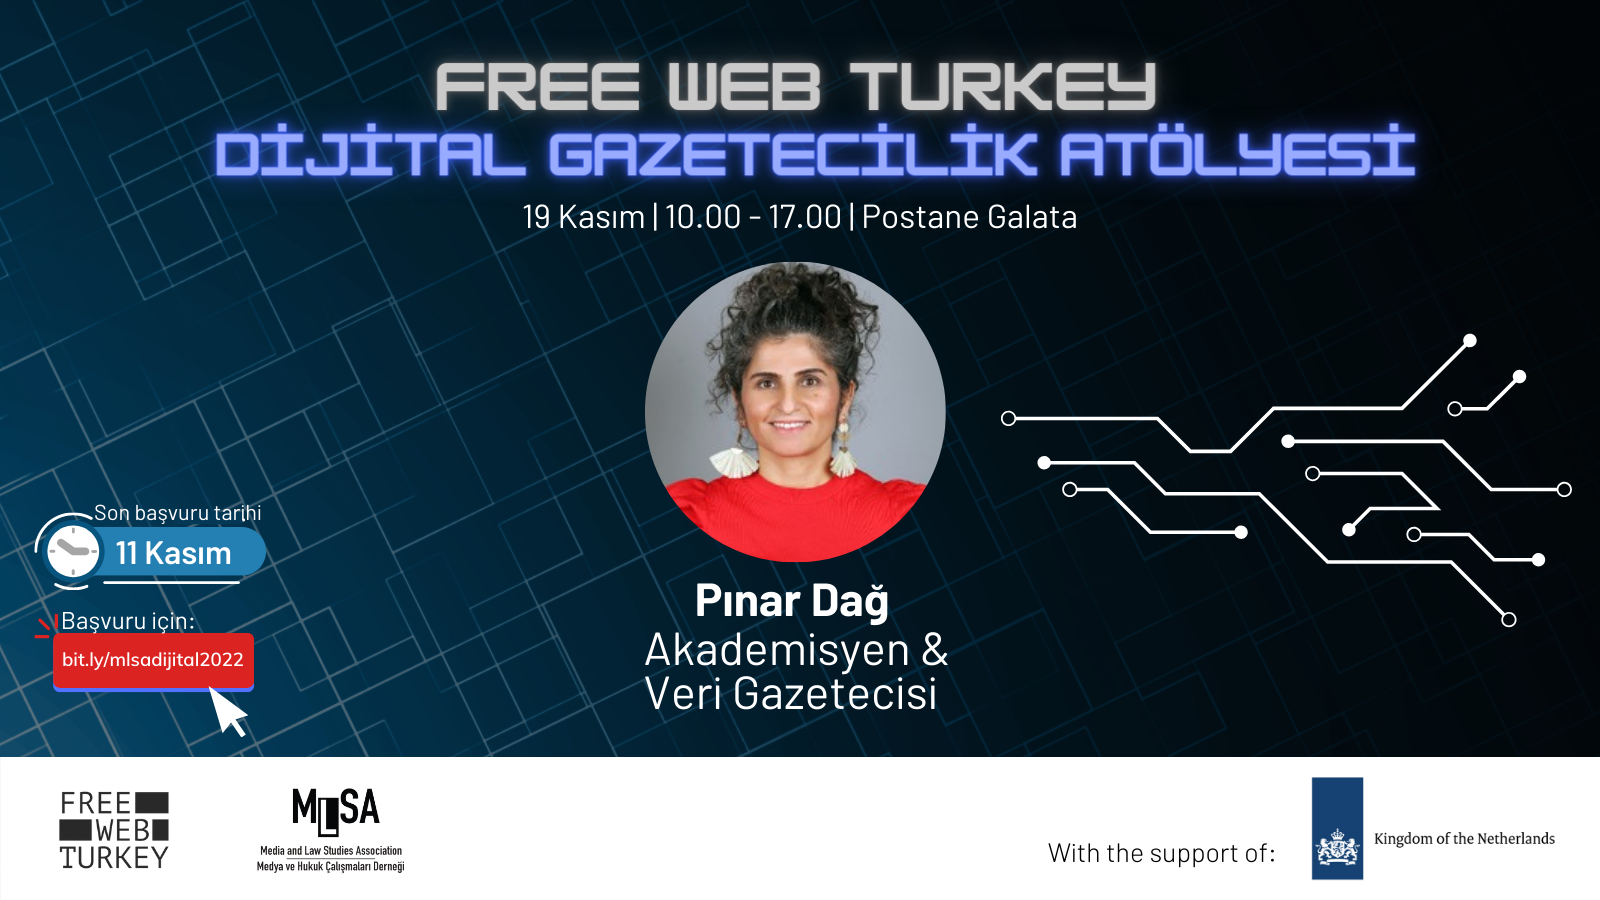 MLSA ve Free Web Turkey, Dijital Gazetecilik Atölyesi için başvurularınızı bekliyor